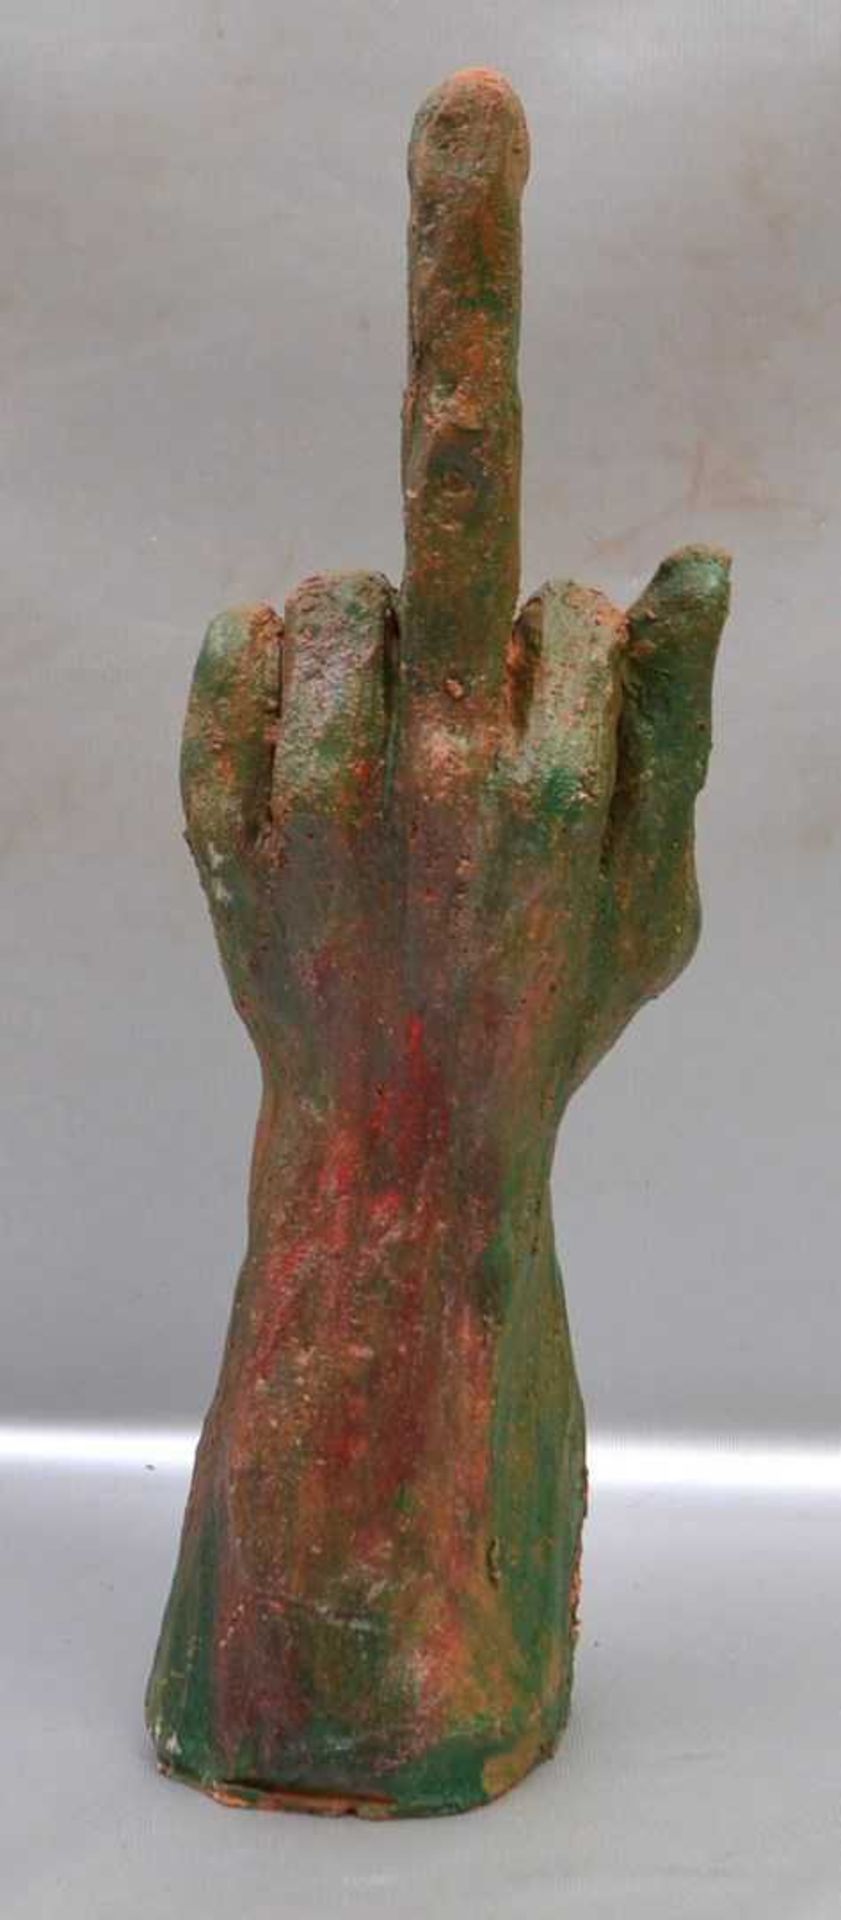 Hand mit ausgestrecktem Mittelfinger Ton, grün, rot und braun, H 42 cm, Hermann Josef Maibach, 6.1.